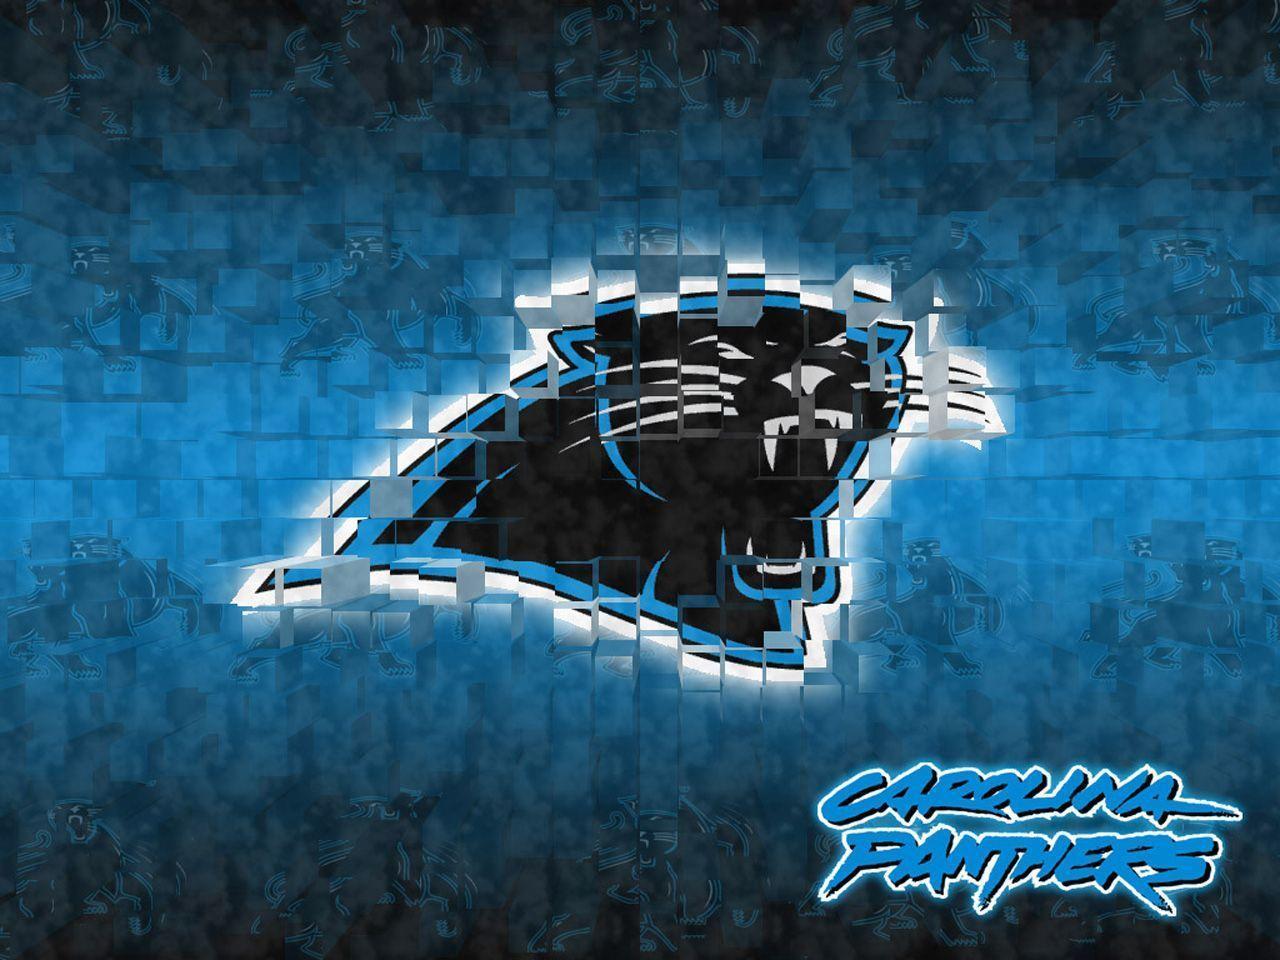 Carolina Panthers Desktop Wallpaper Free 24182 Image. wallgraf